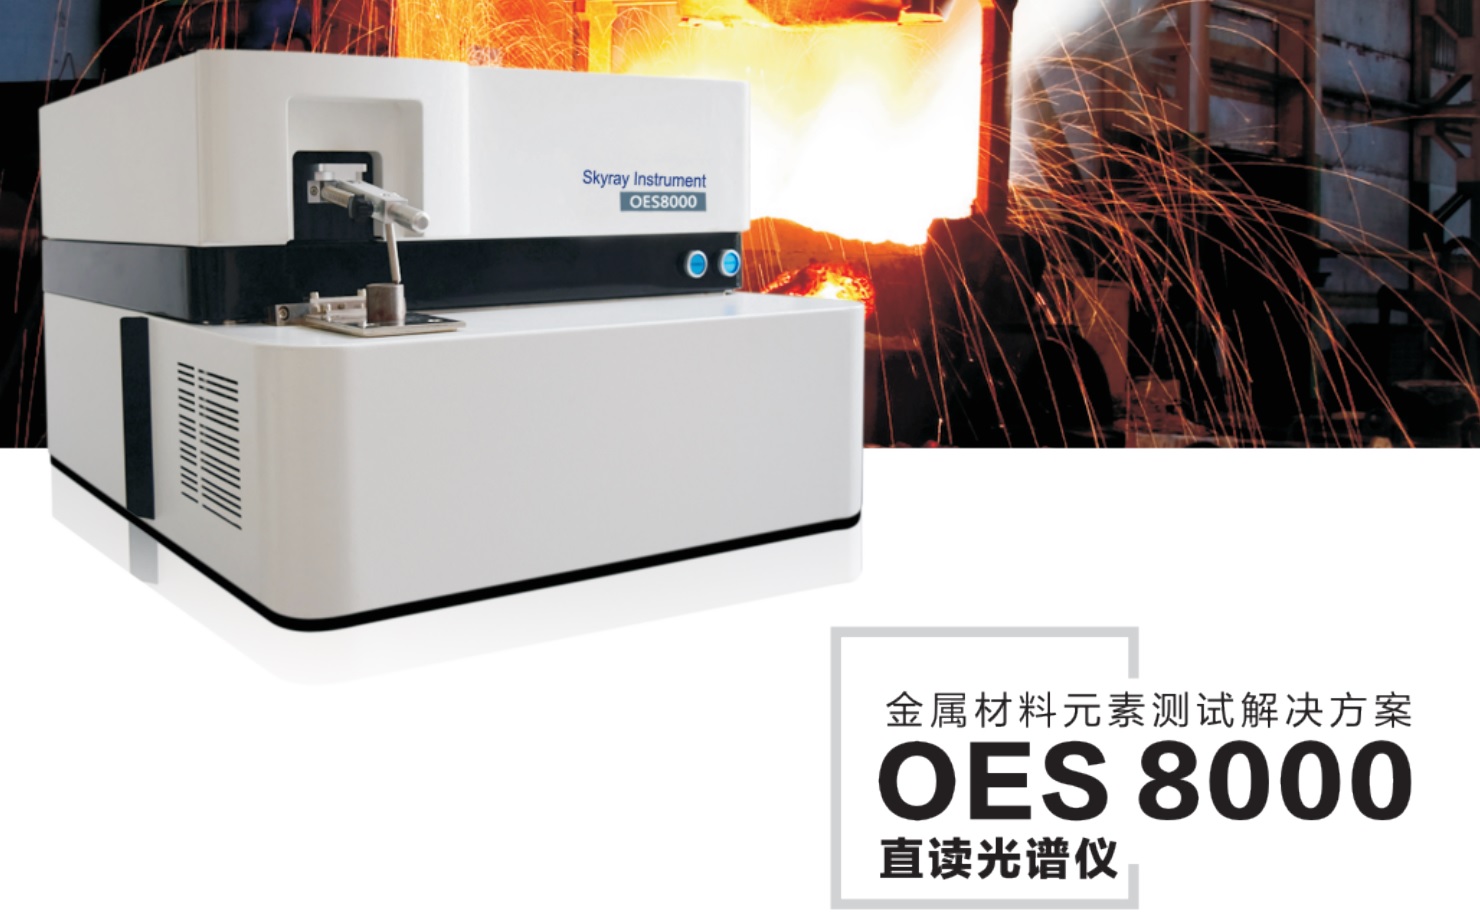 江苏天瑞仪器股份有限公司-OES8000